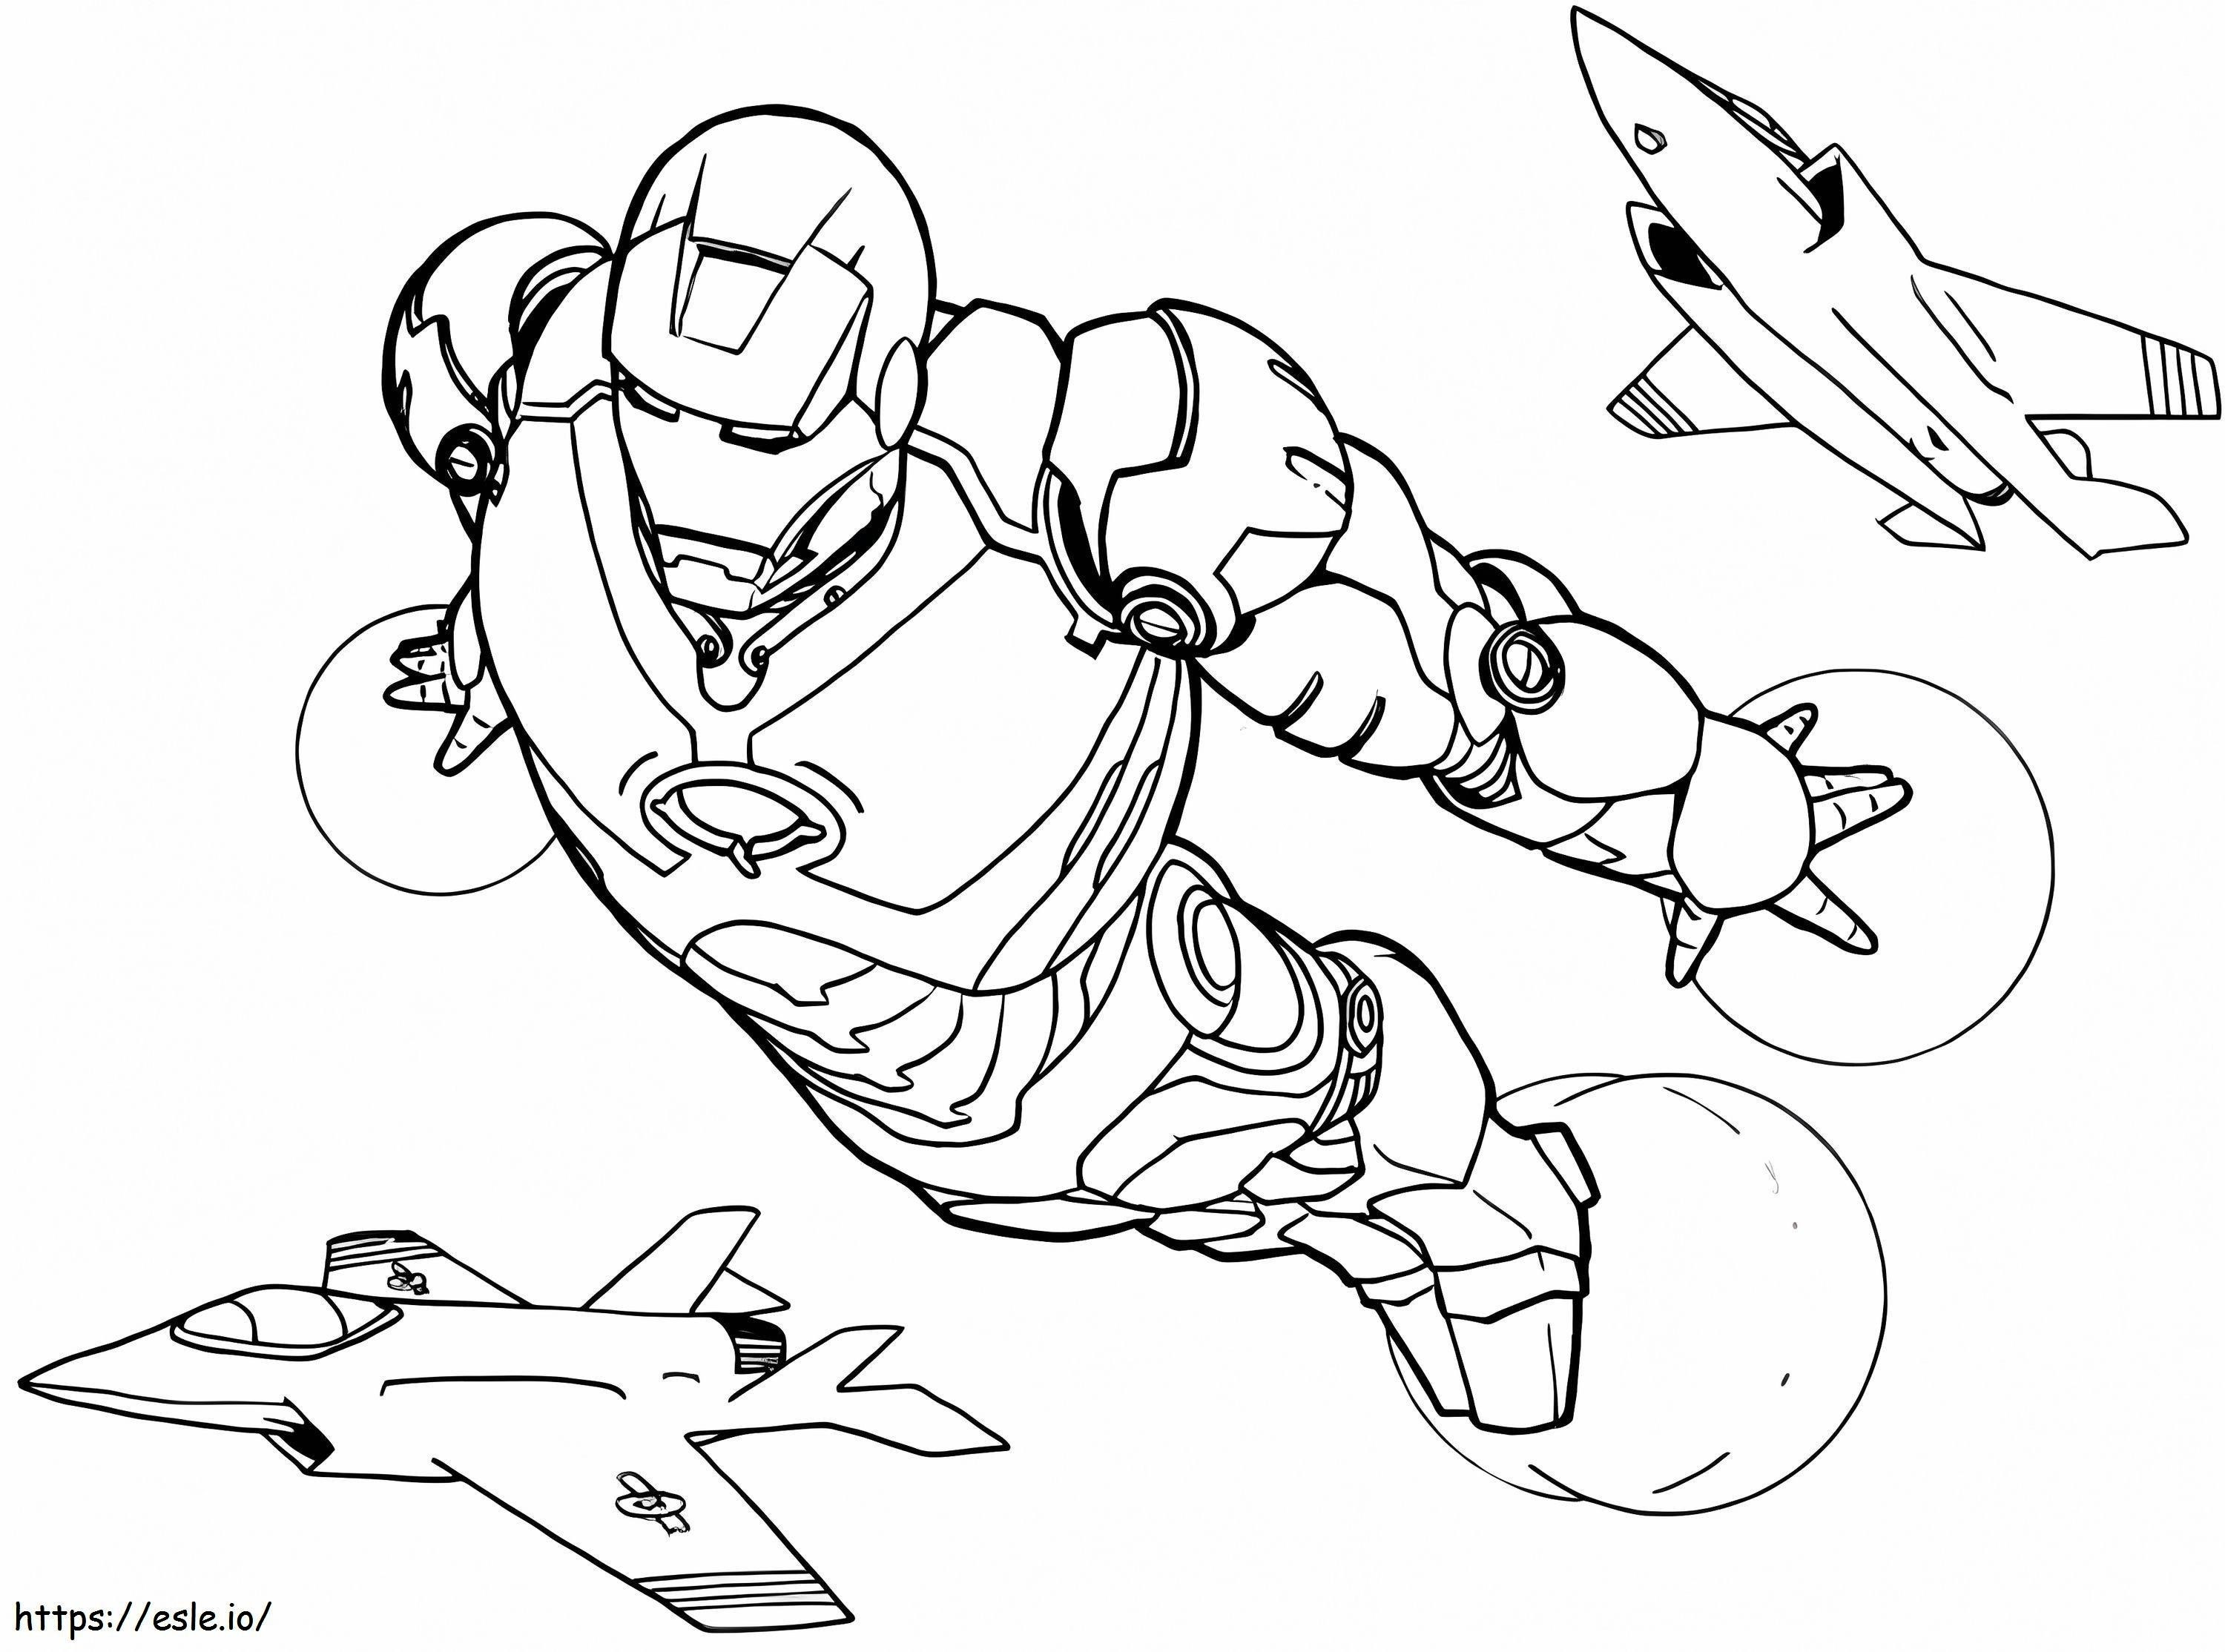 Coloriage Ironman volant avec deux avions à réaction à imprimer dessin